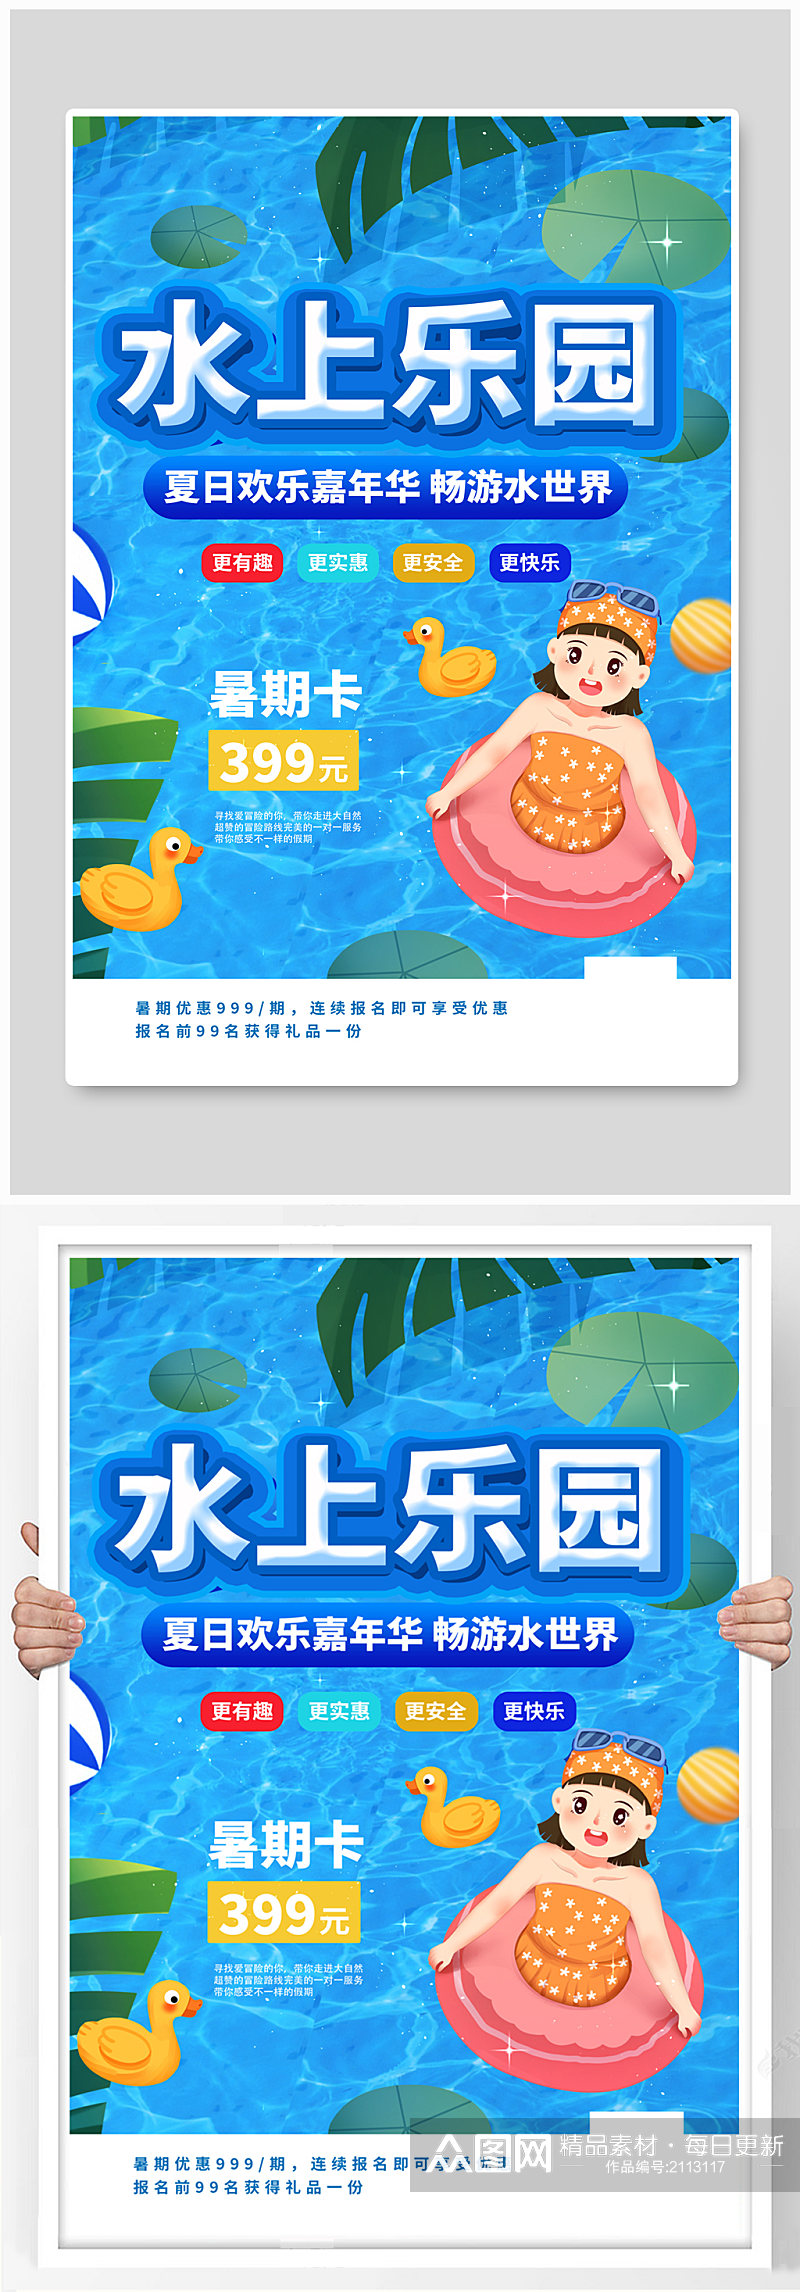 夏季水上乐园促销宣传海报素材